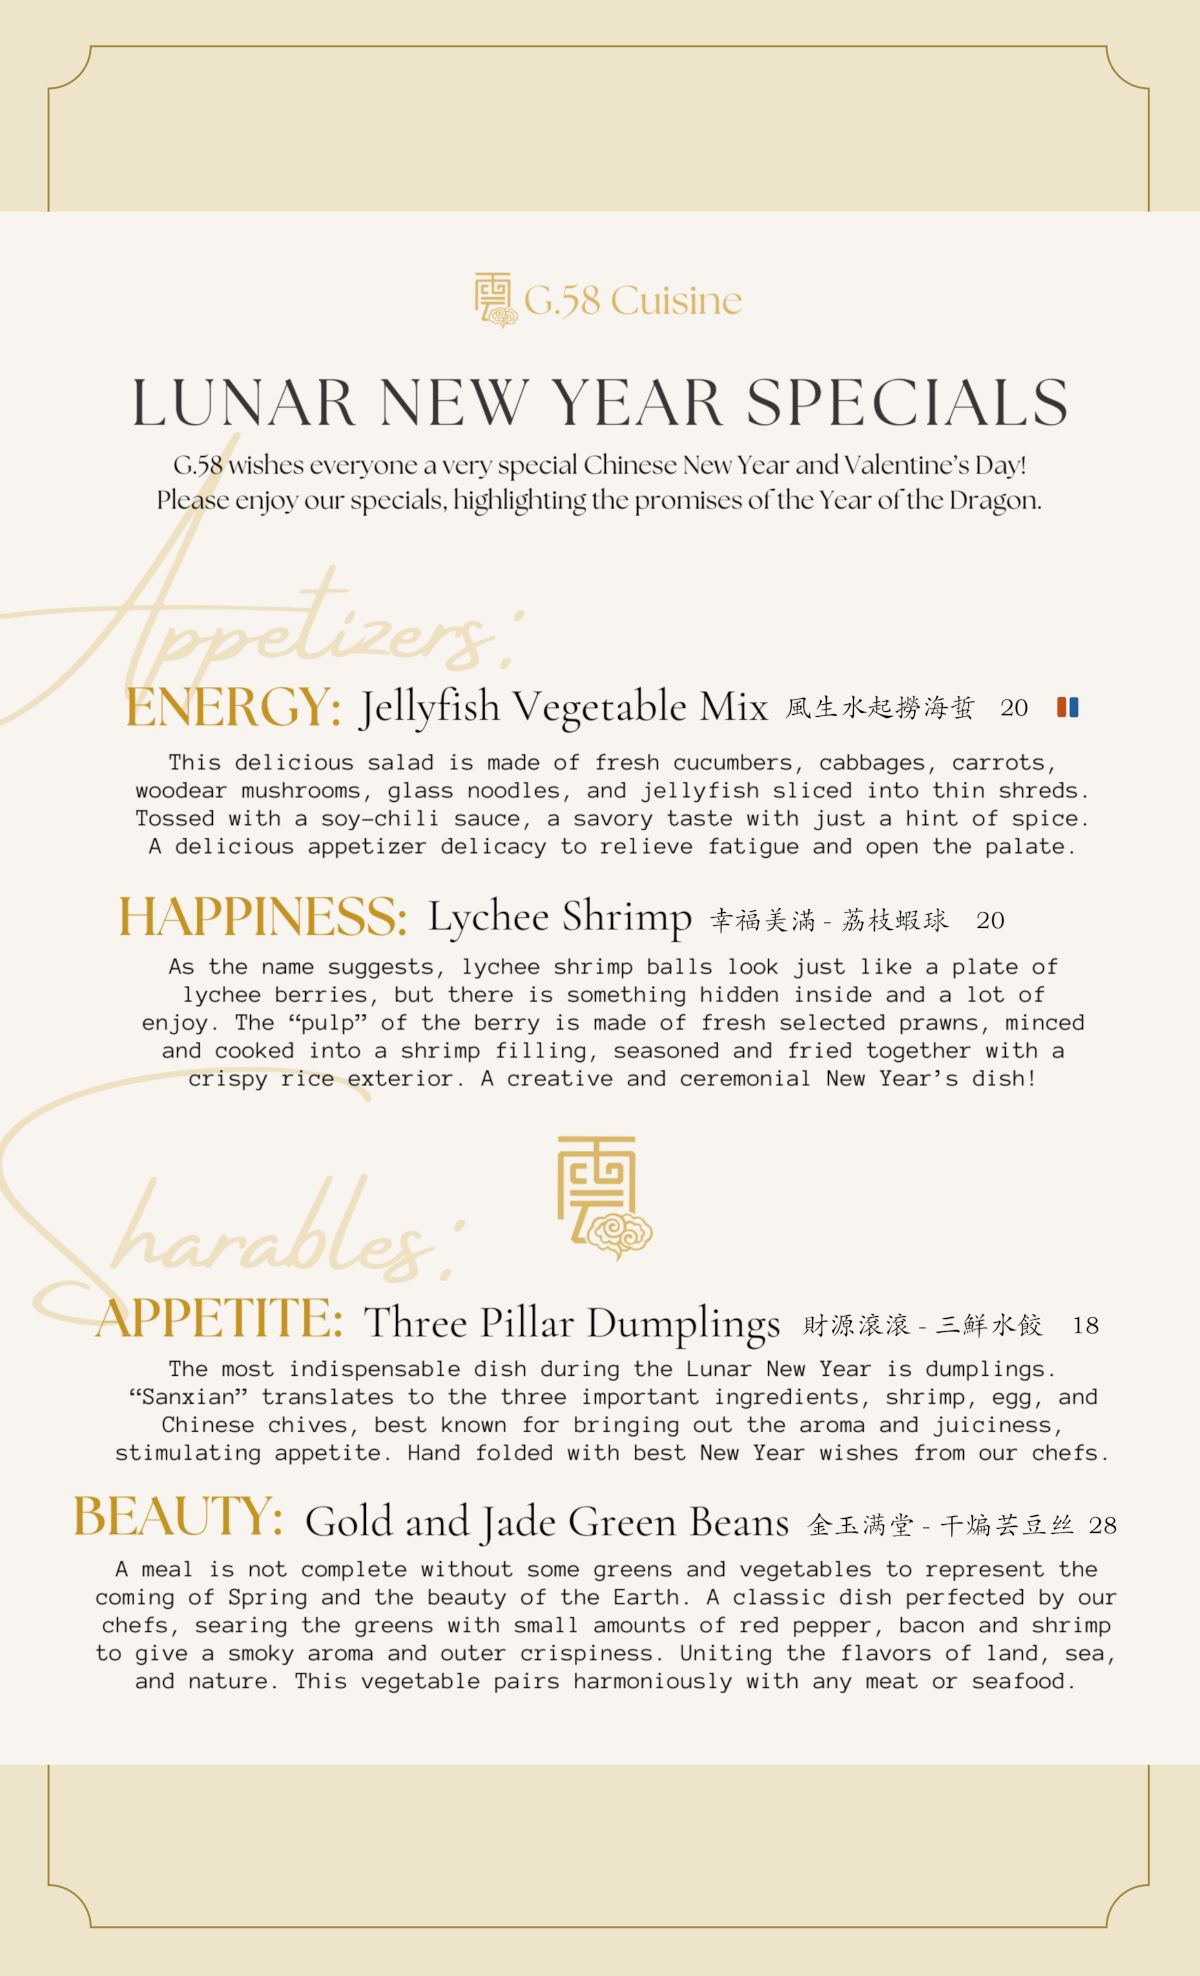 lunar new year specilas menu